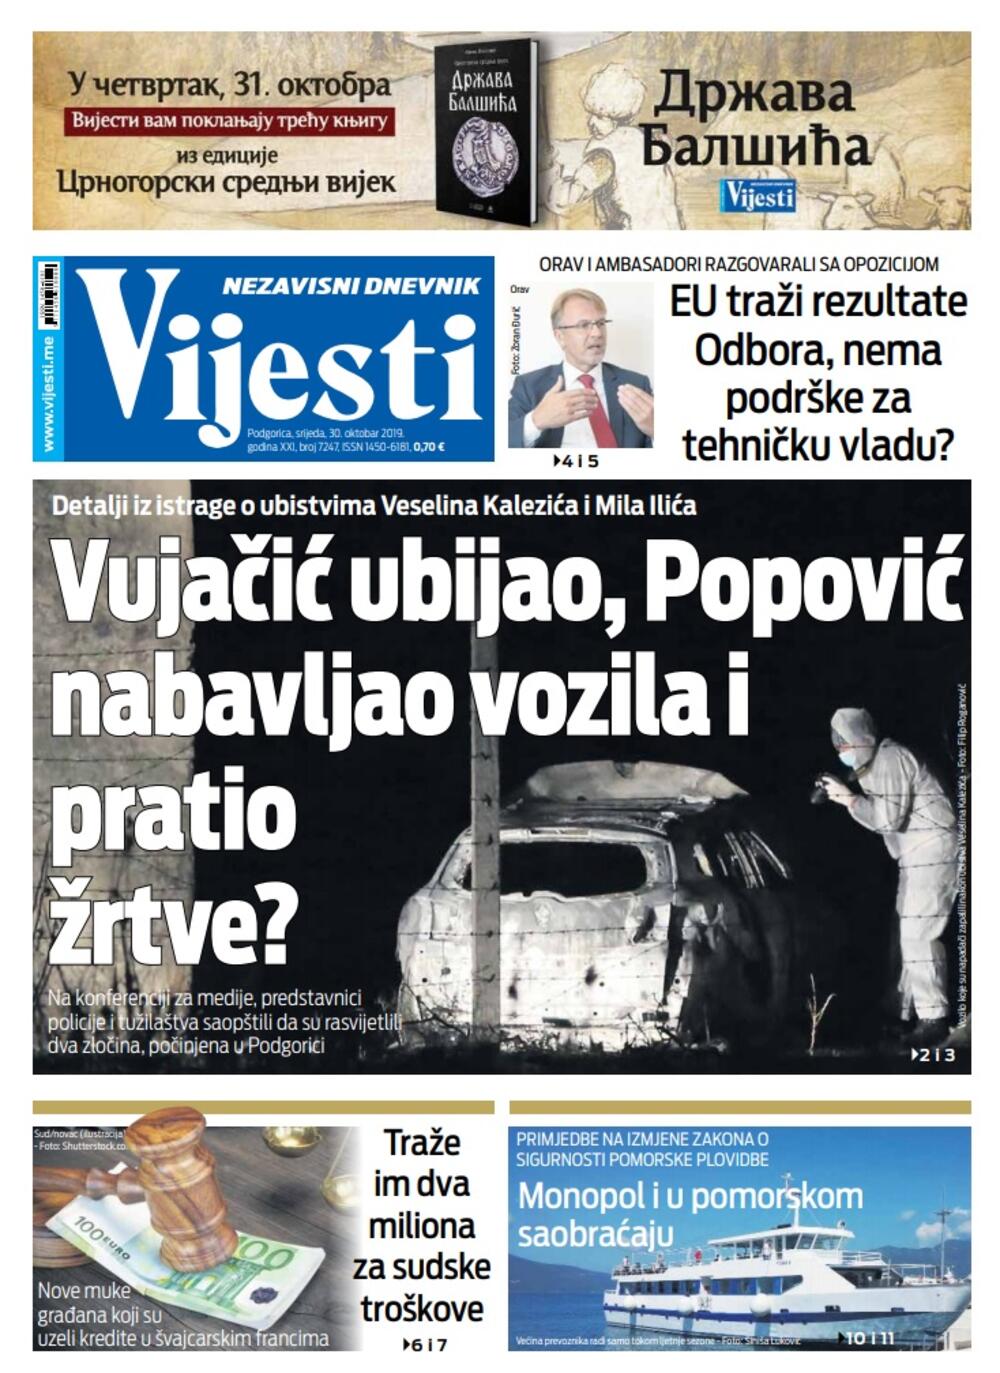 Naslovna strana "Vijesti" za 30. oktobar 2019., Foto: Vijesti